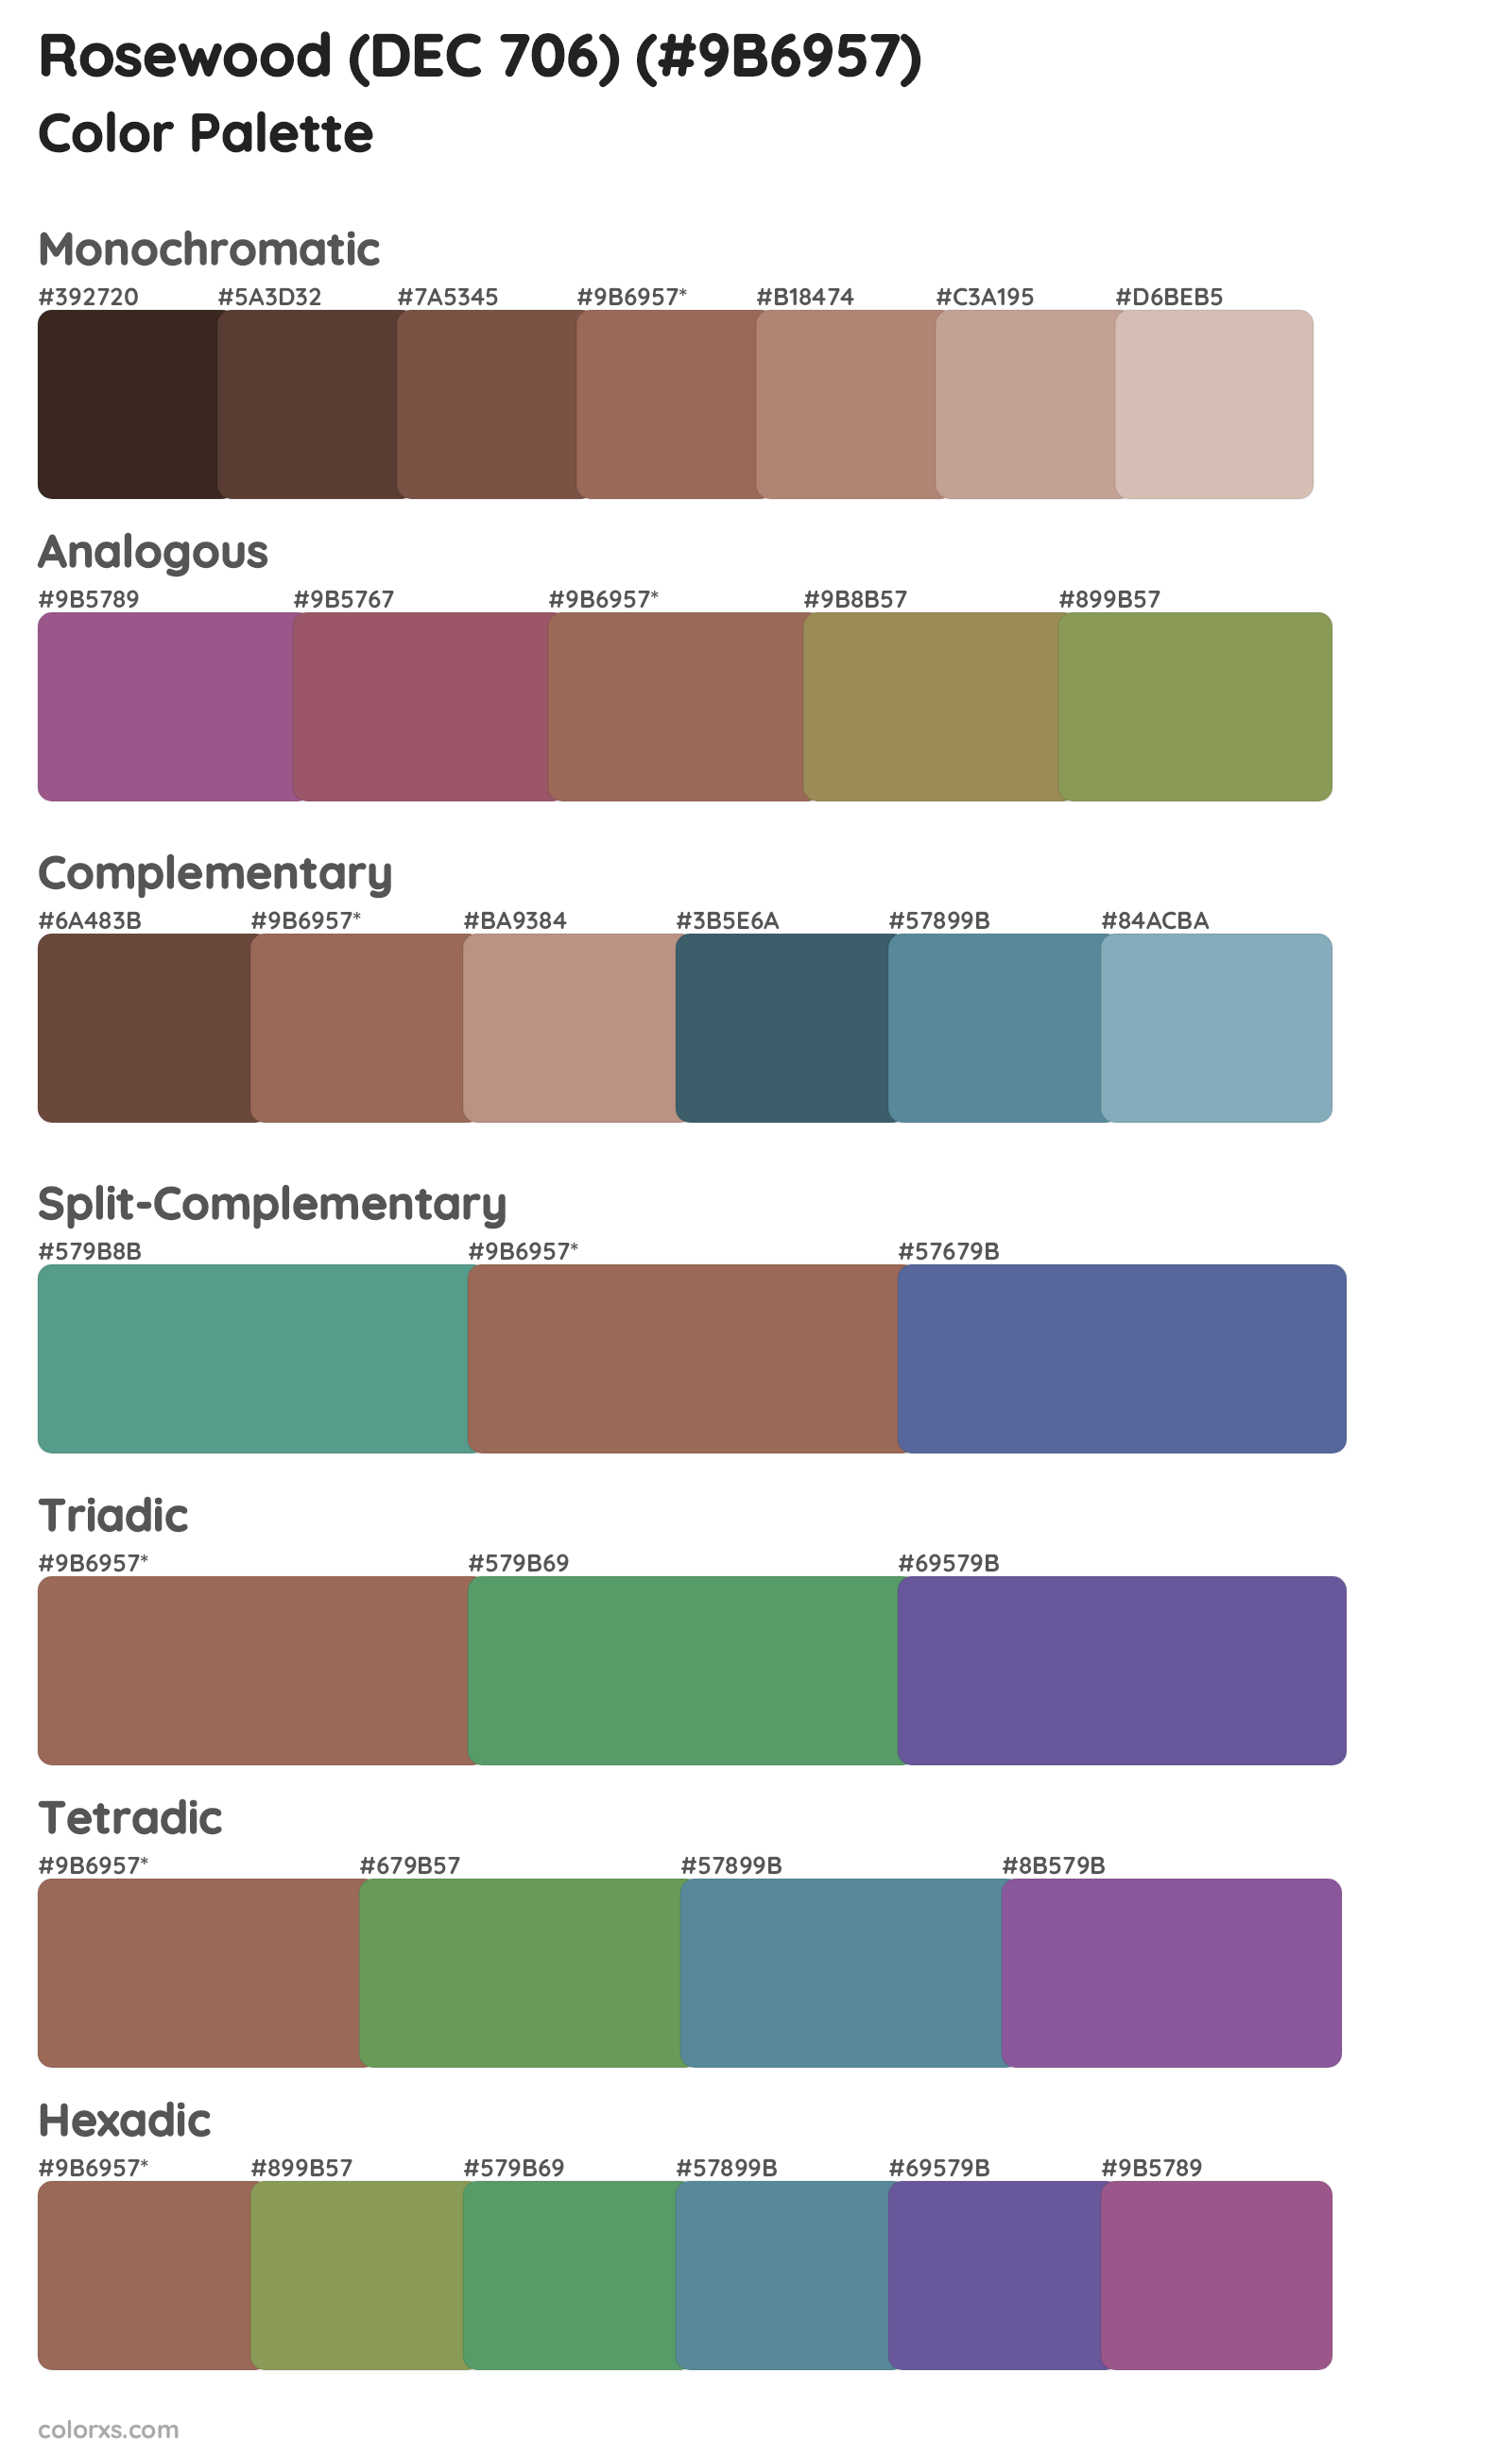 Rosewood (DEC 706) Color Scheme Palettes